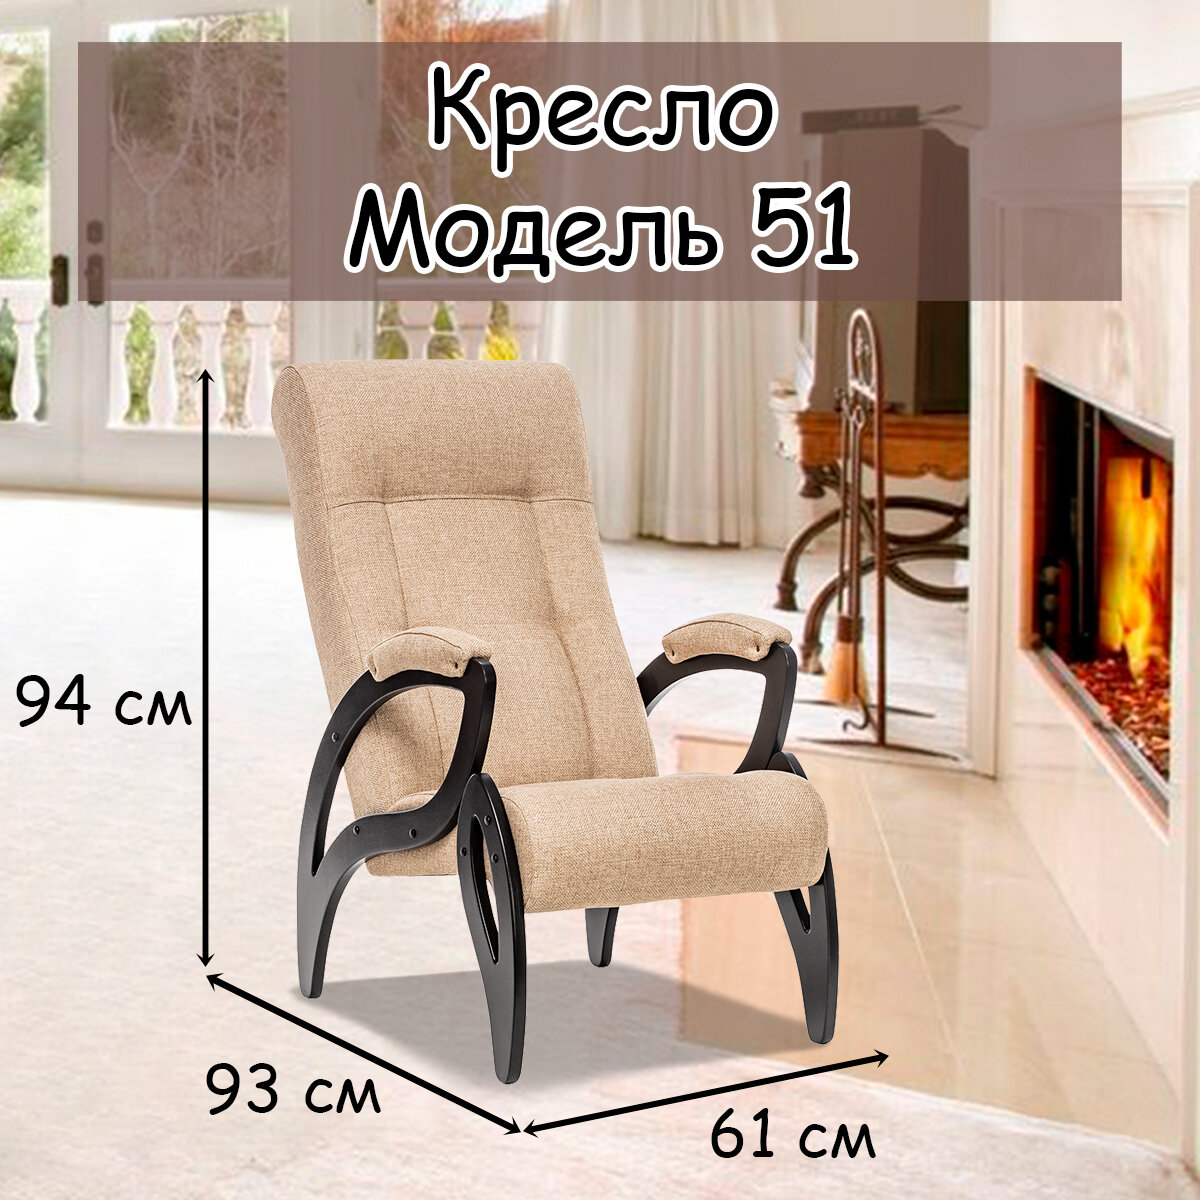 Кресло для взрослых 58.5х87х99 см, модель 51, malta, цвет: Мalta 03А (бежевый), каркас: Venge (черный) - фотография № 1